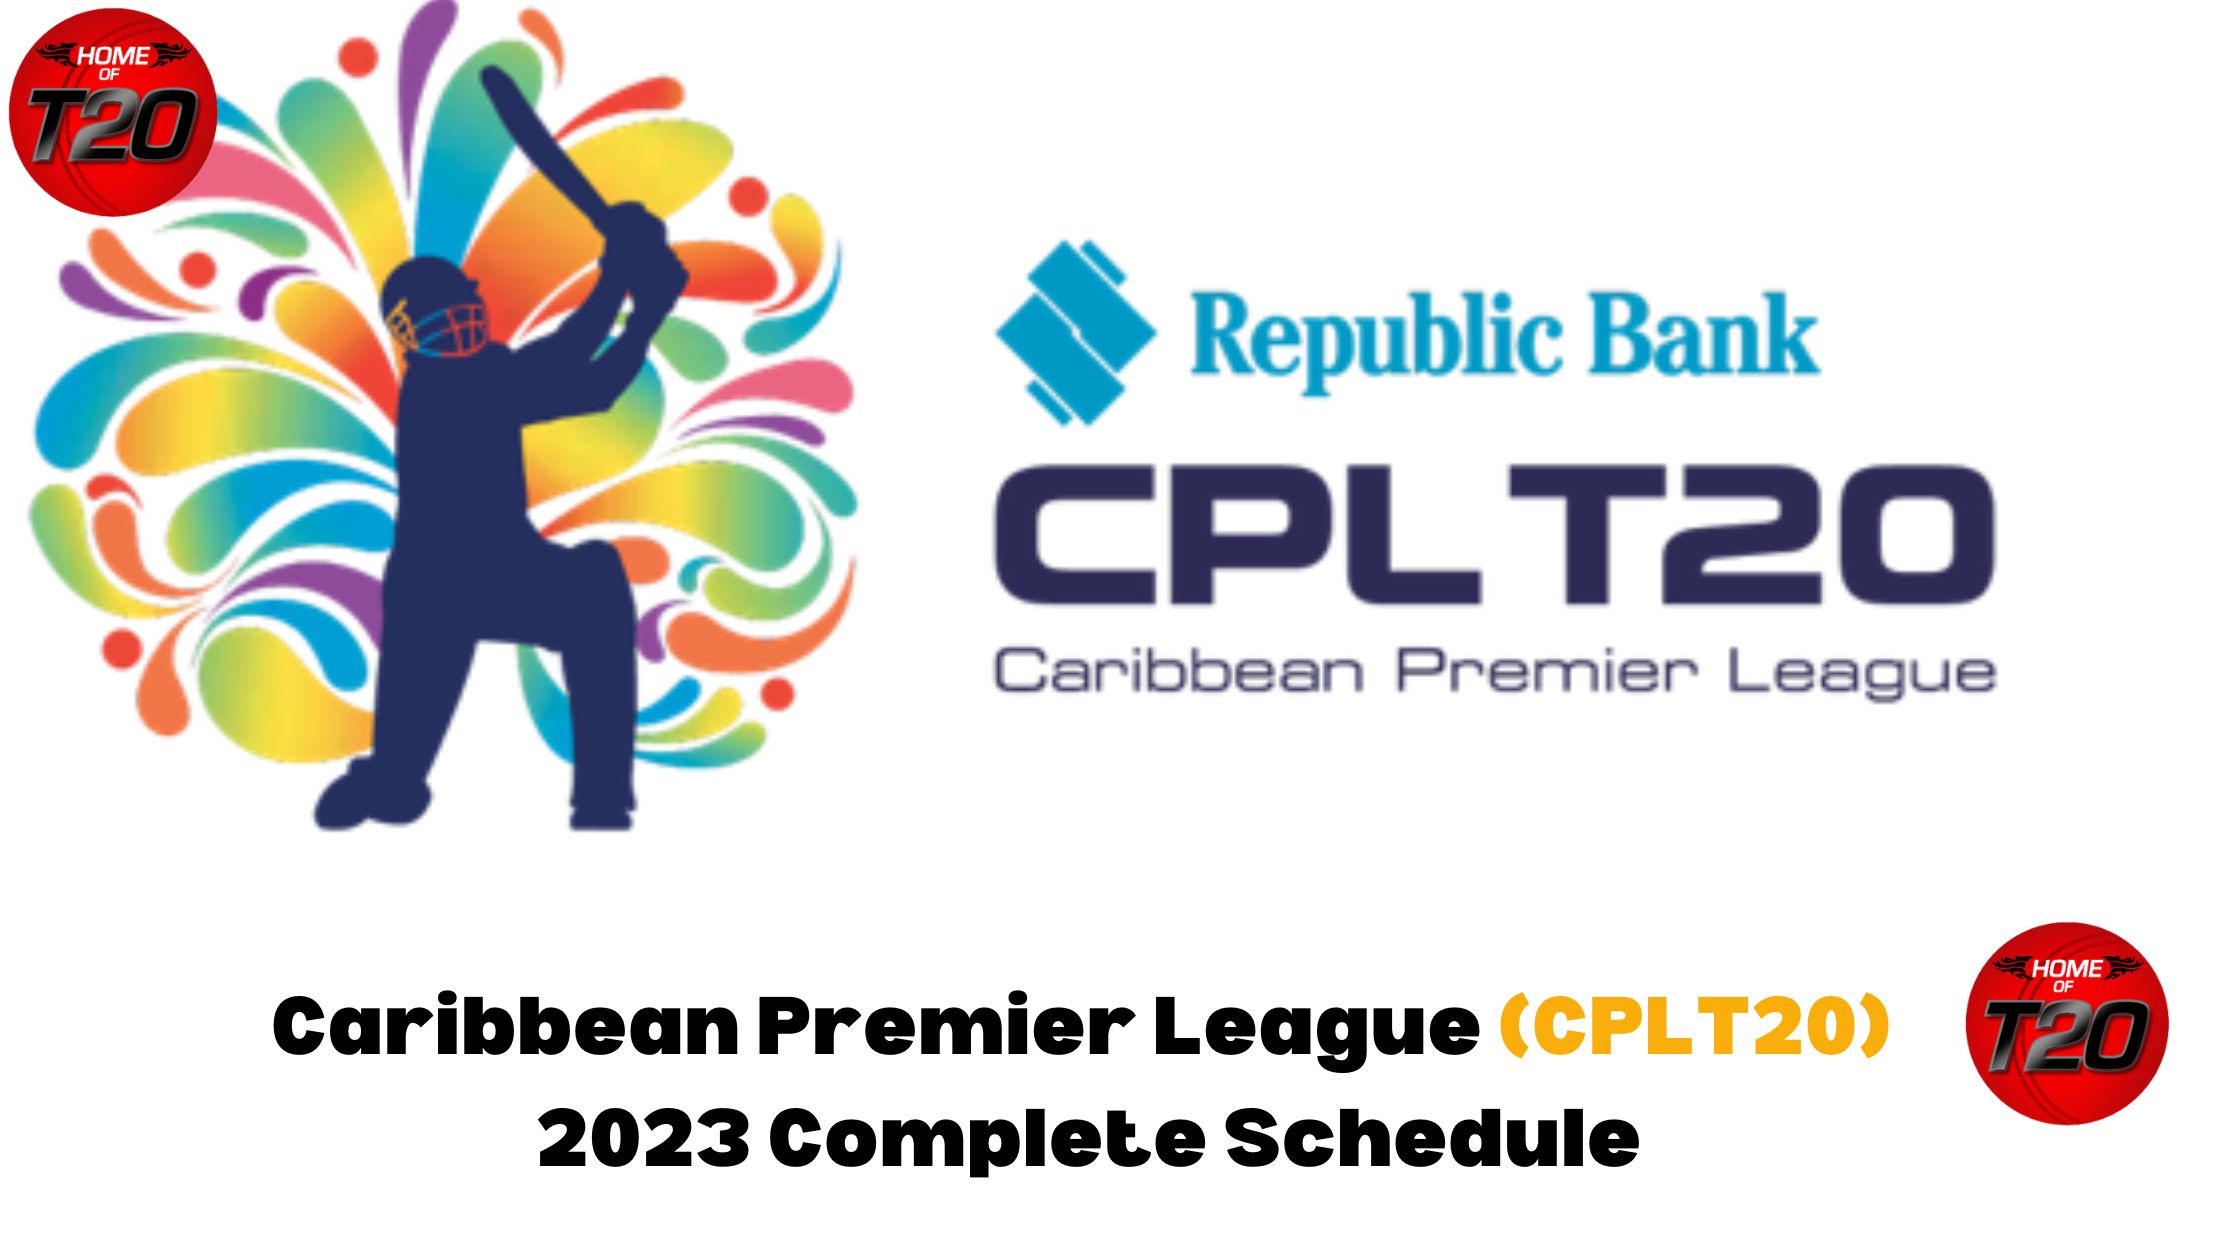 Caribbean Premier League (CPLT20) 2023 Complete Schedule